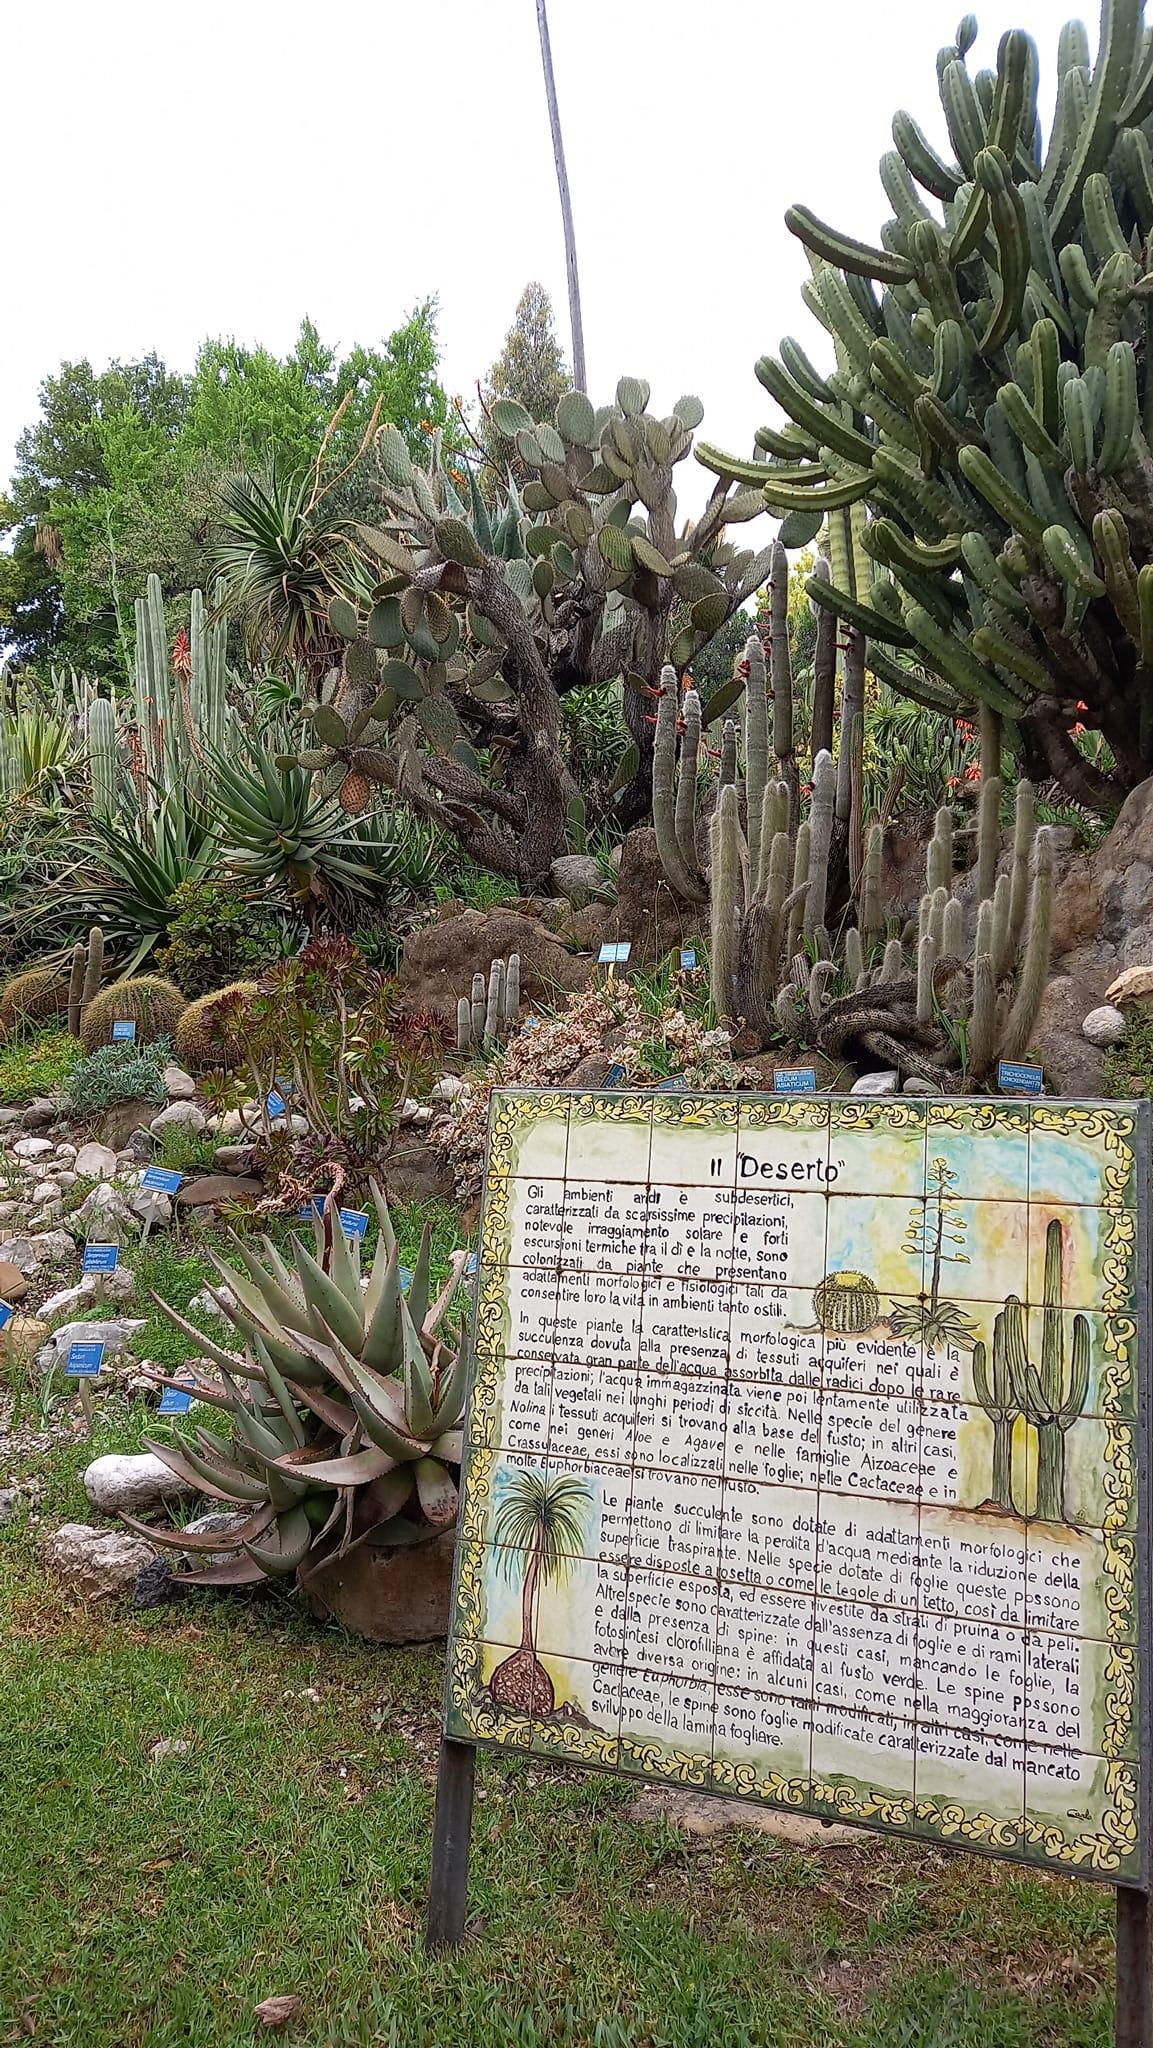 Dal 4 al 5 maggio a Napoli, nel Real Orto Botanico, per la decima edizione di "Planta, il giardino e non solo"